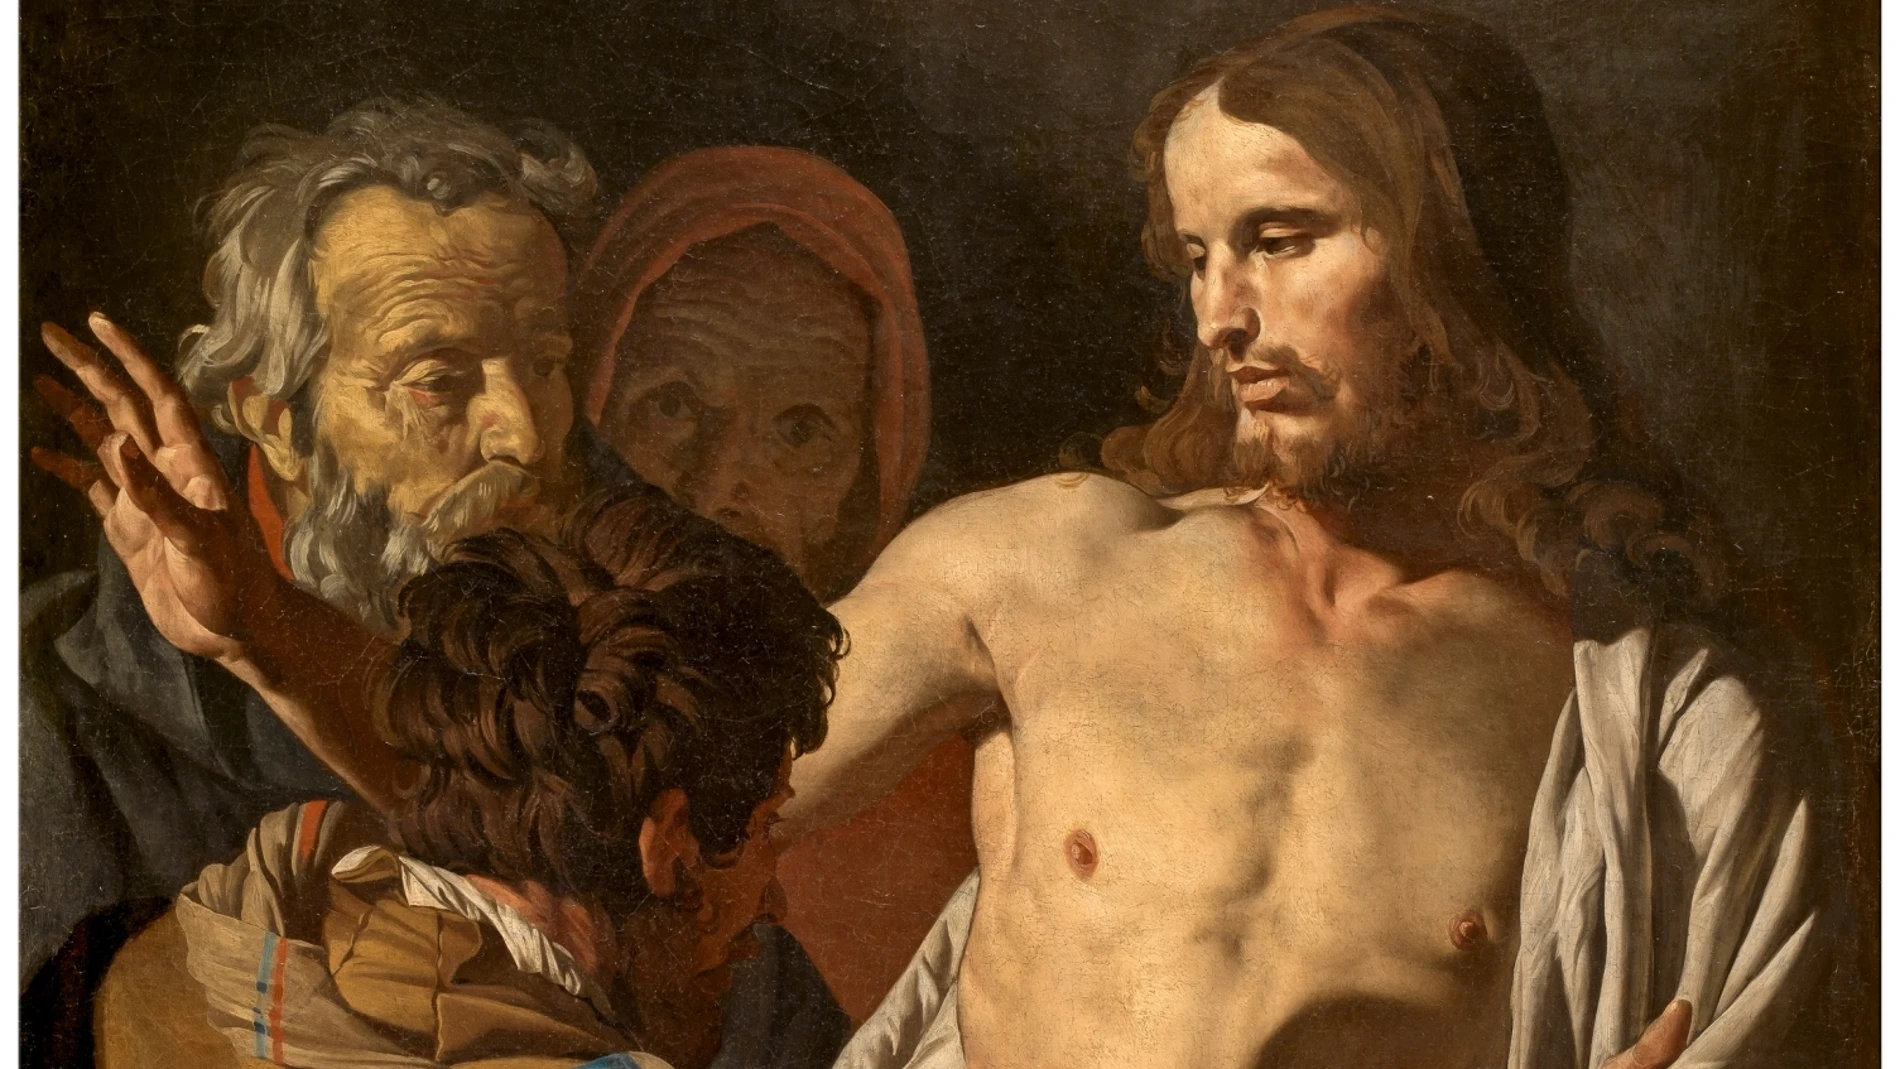 Pintura de Caravaggio, "La incredulidad de Tomás", que está en el Prado.